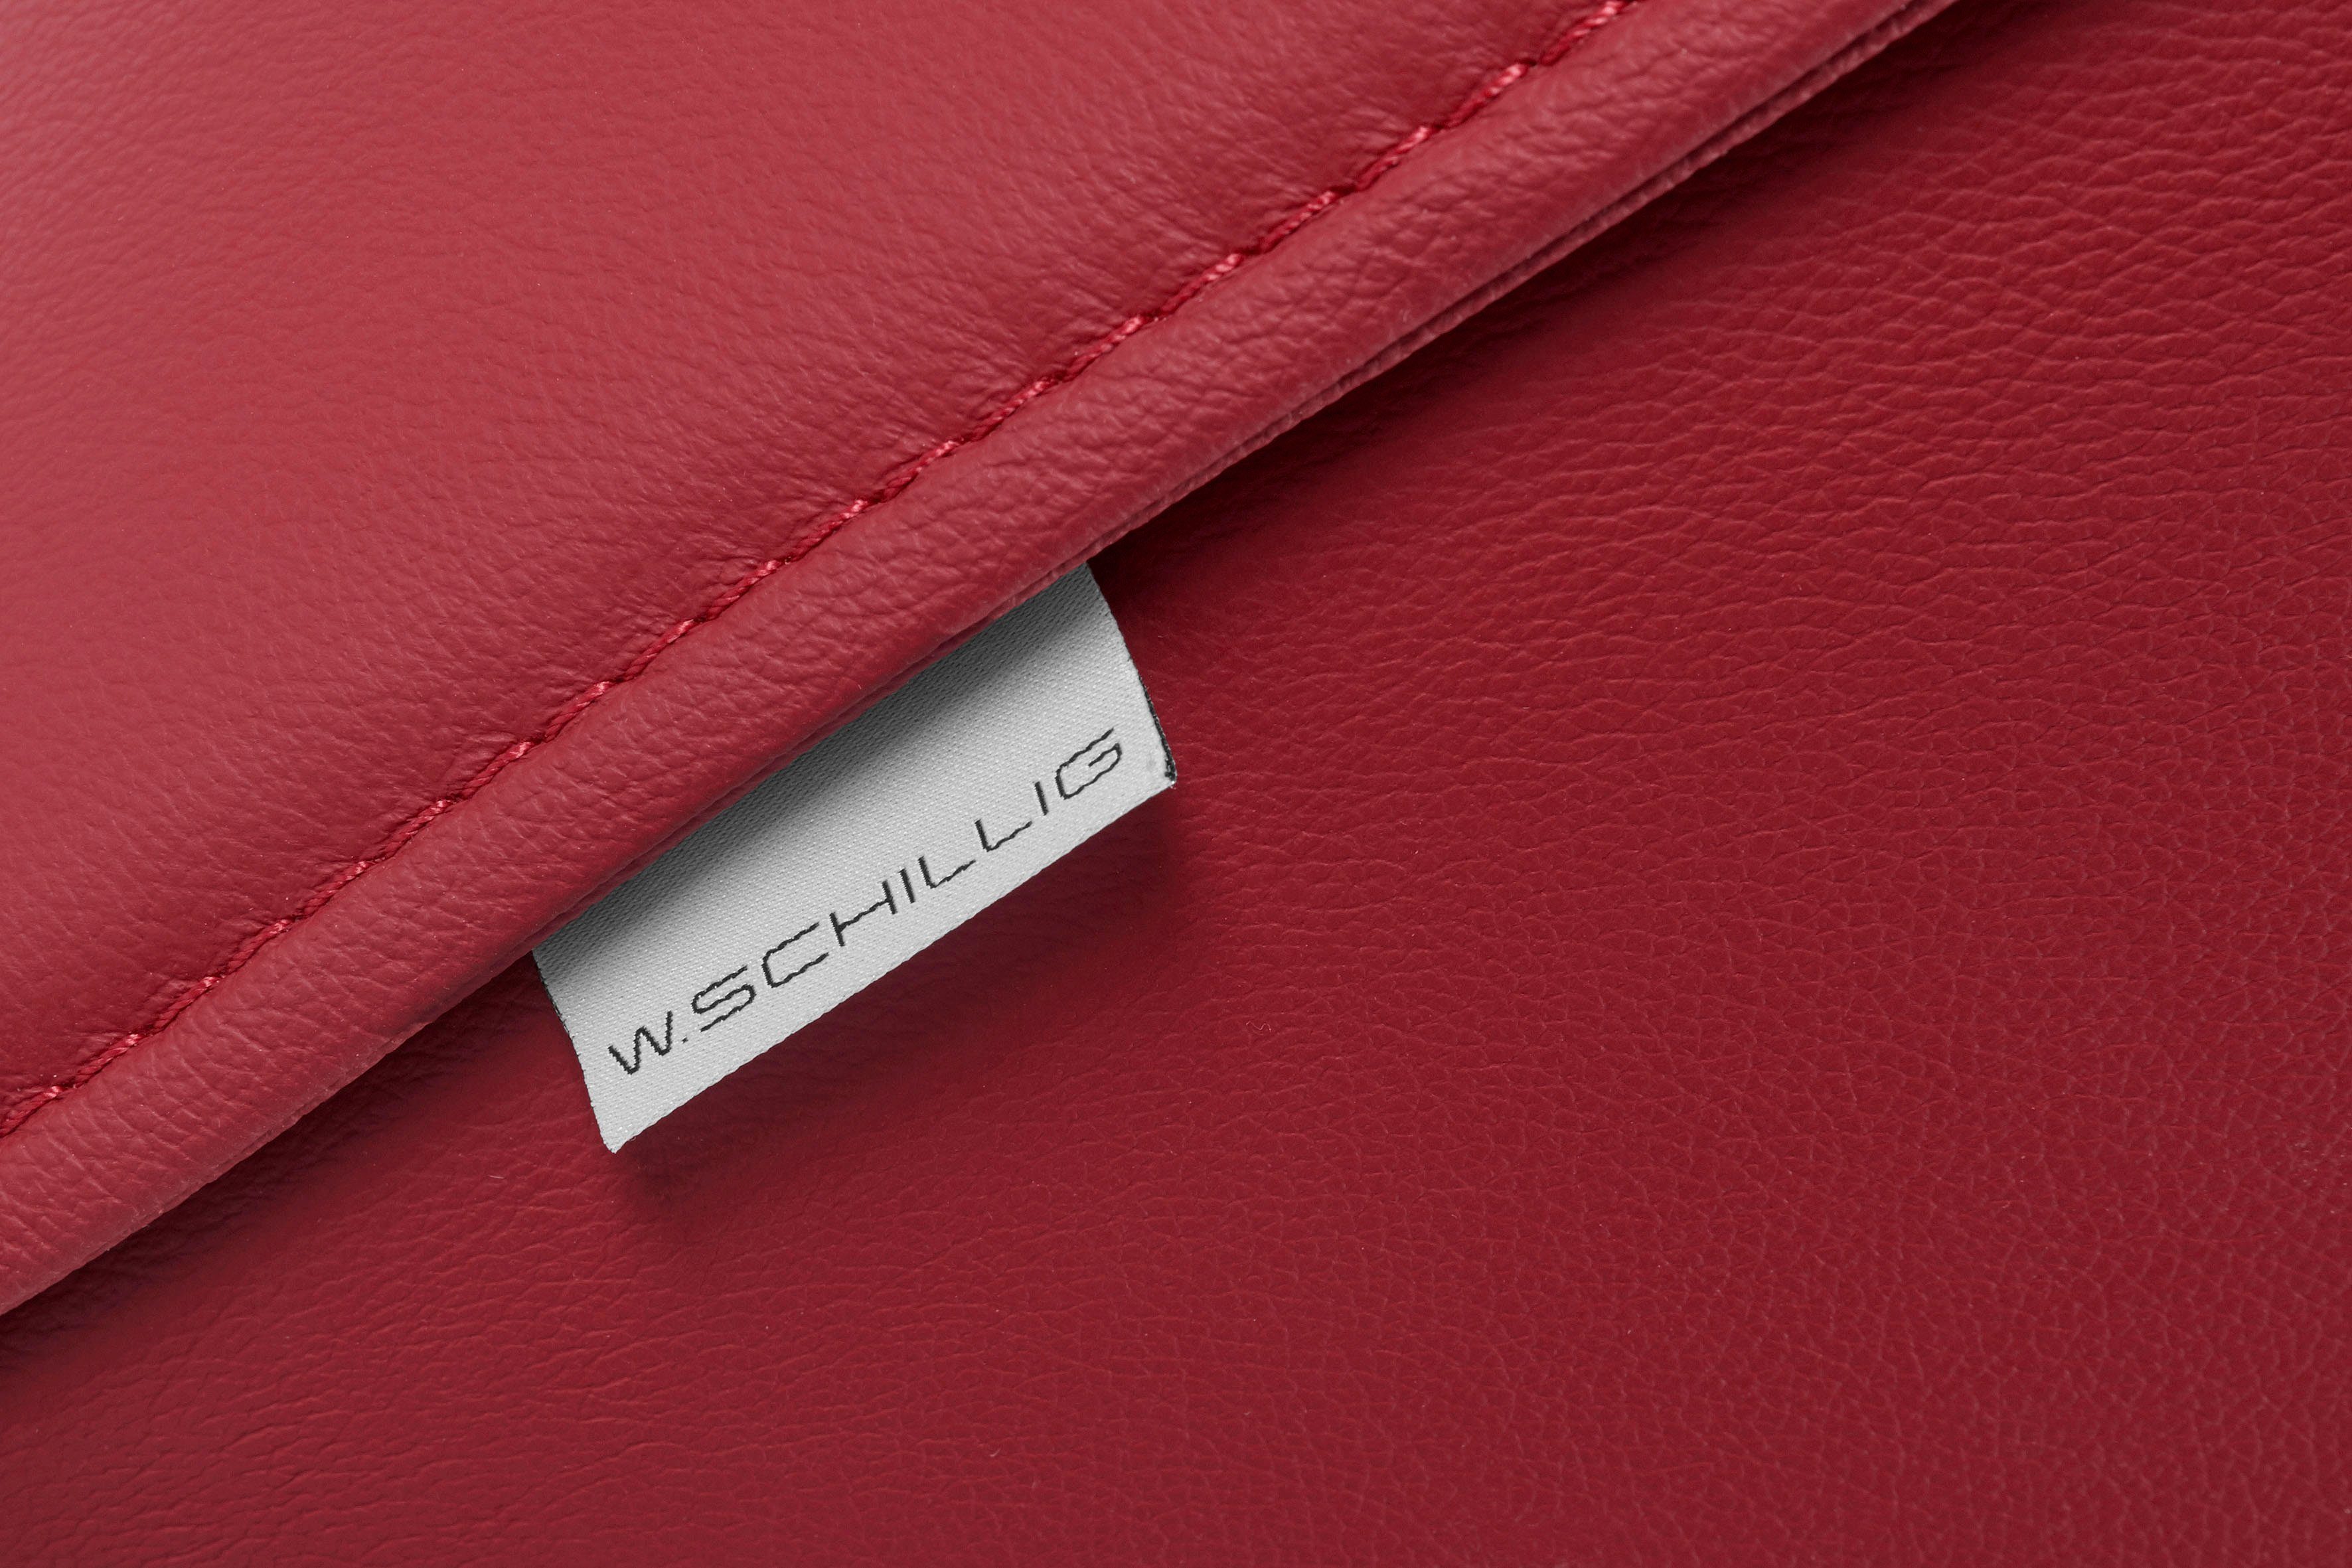 red 3-Sitzer Z59 cm in 224 sally, ruby Breite mit pulverbeschichtet, Bronze W.SCHILLIG Metall-Winkelfüßen